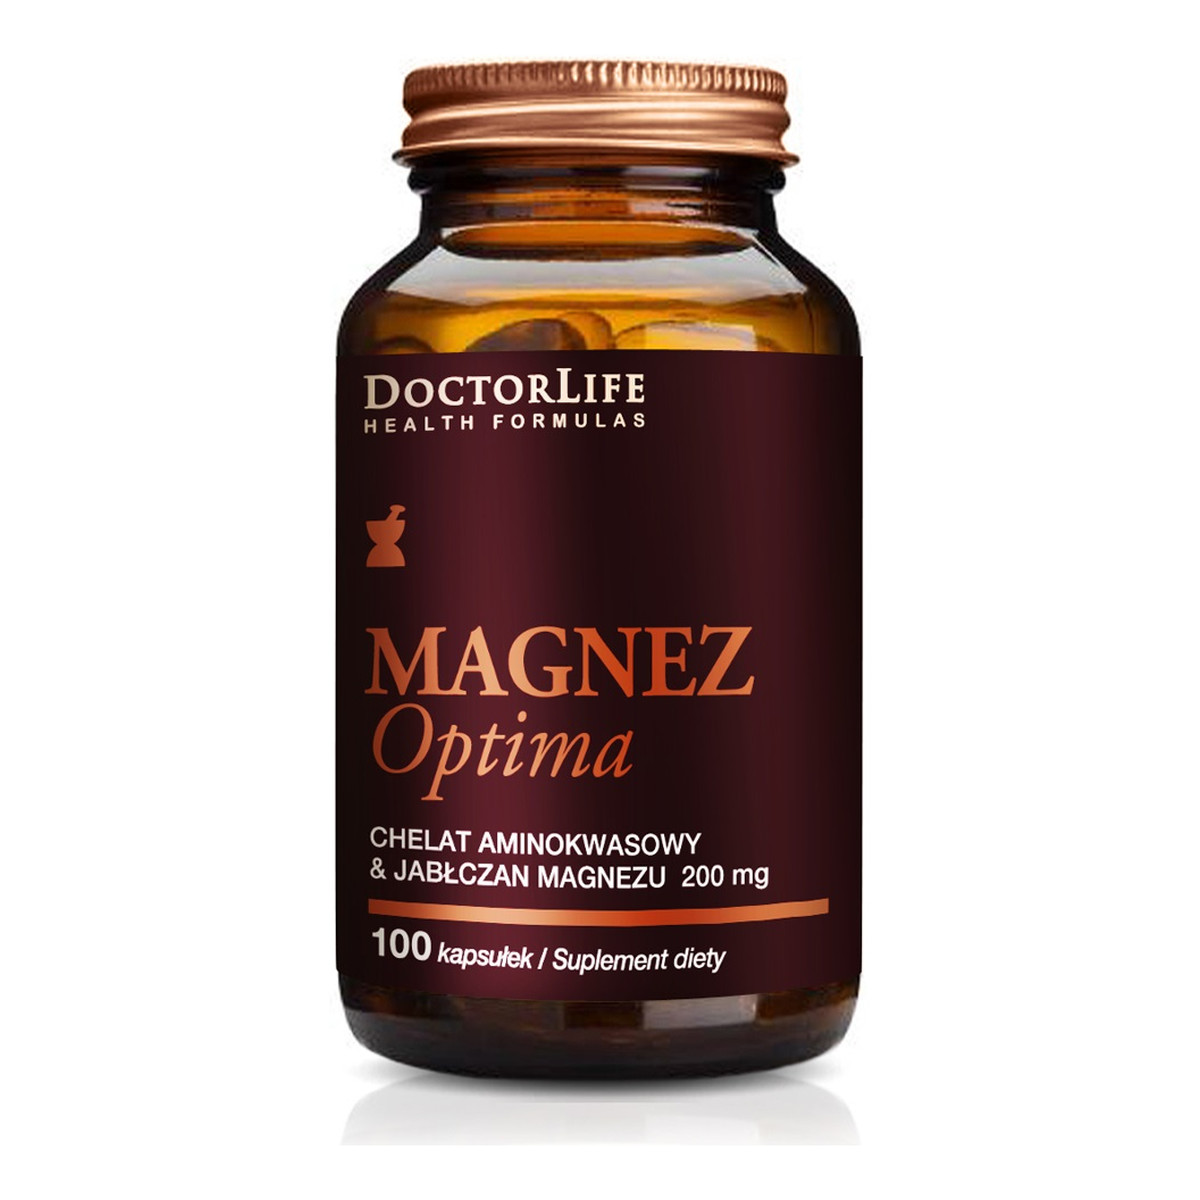 Doctor Life Magnez optima chelat aminokwasowy i jabłczan magnezu 200mg suplement diety 100 kapsułek